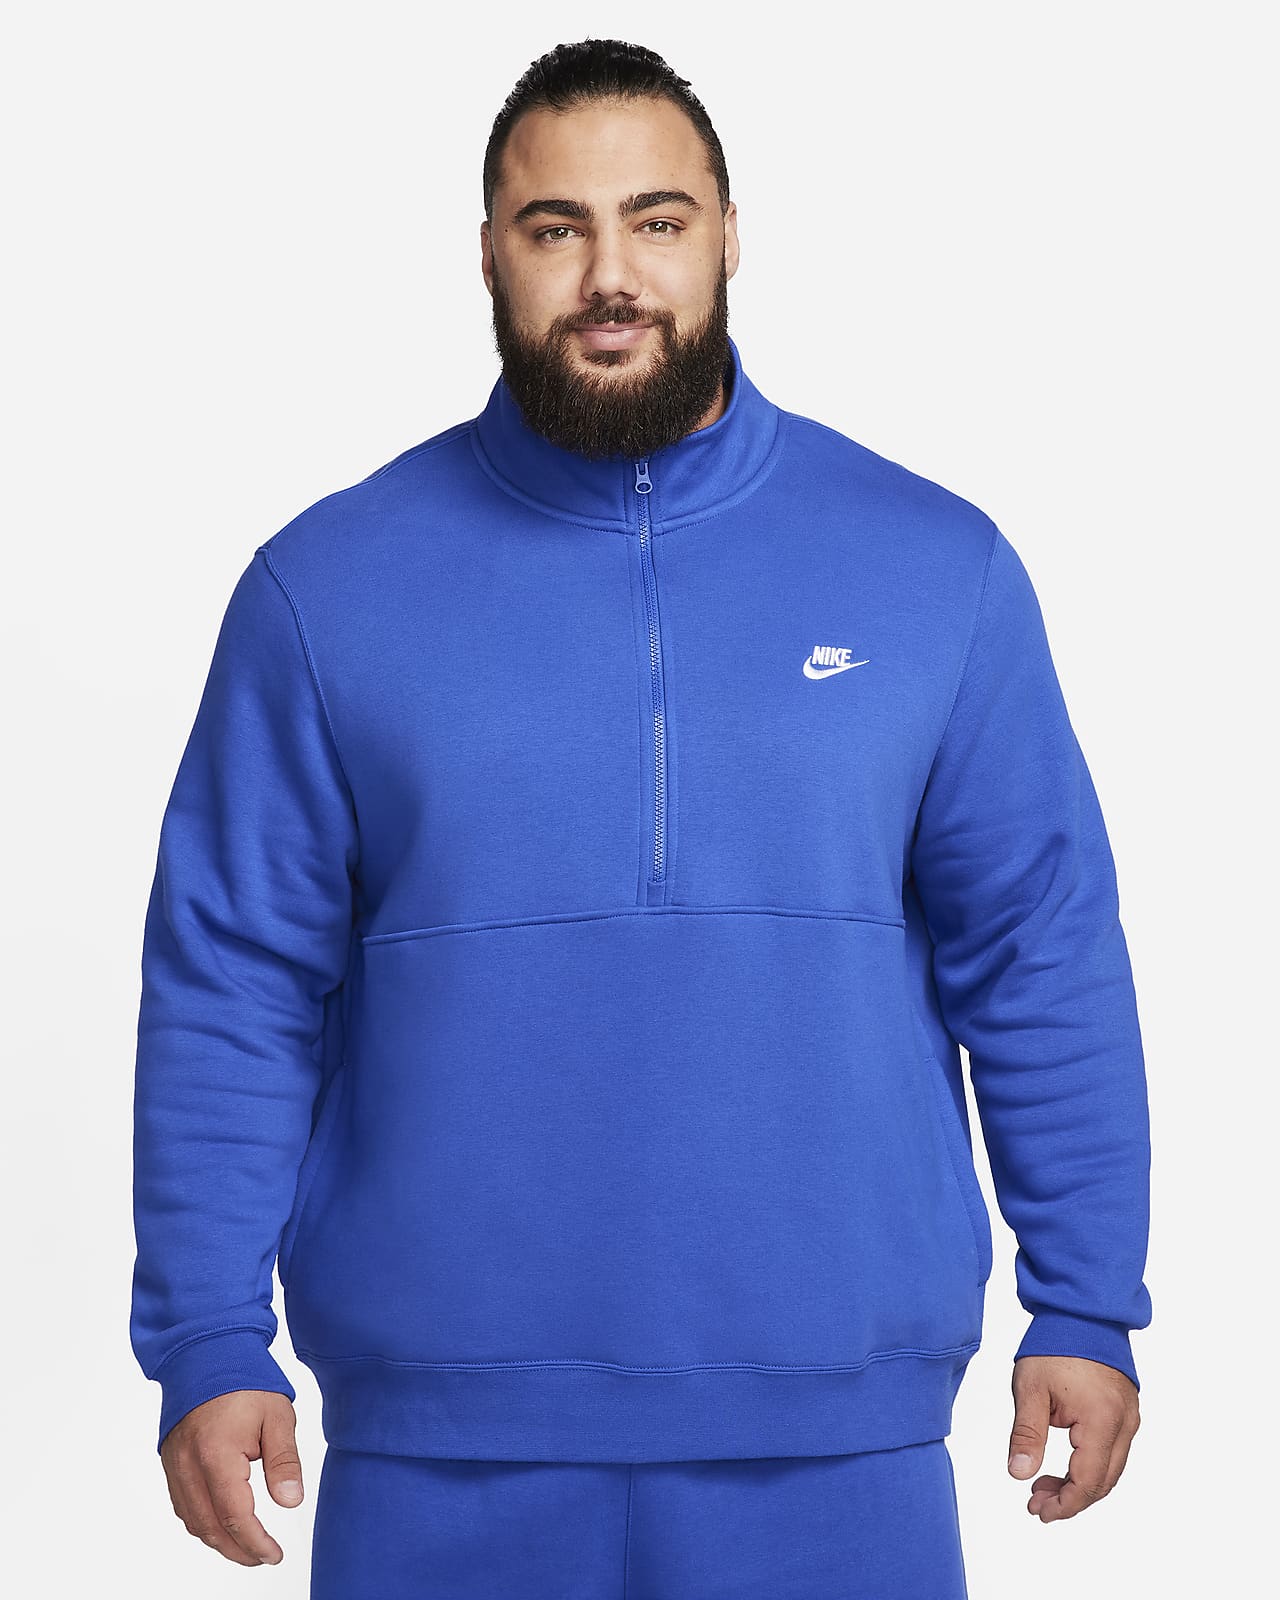 Fleece Hoodies & Sweatshirts. Nike CA